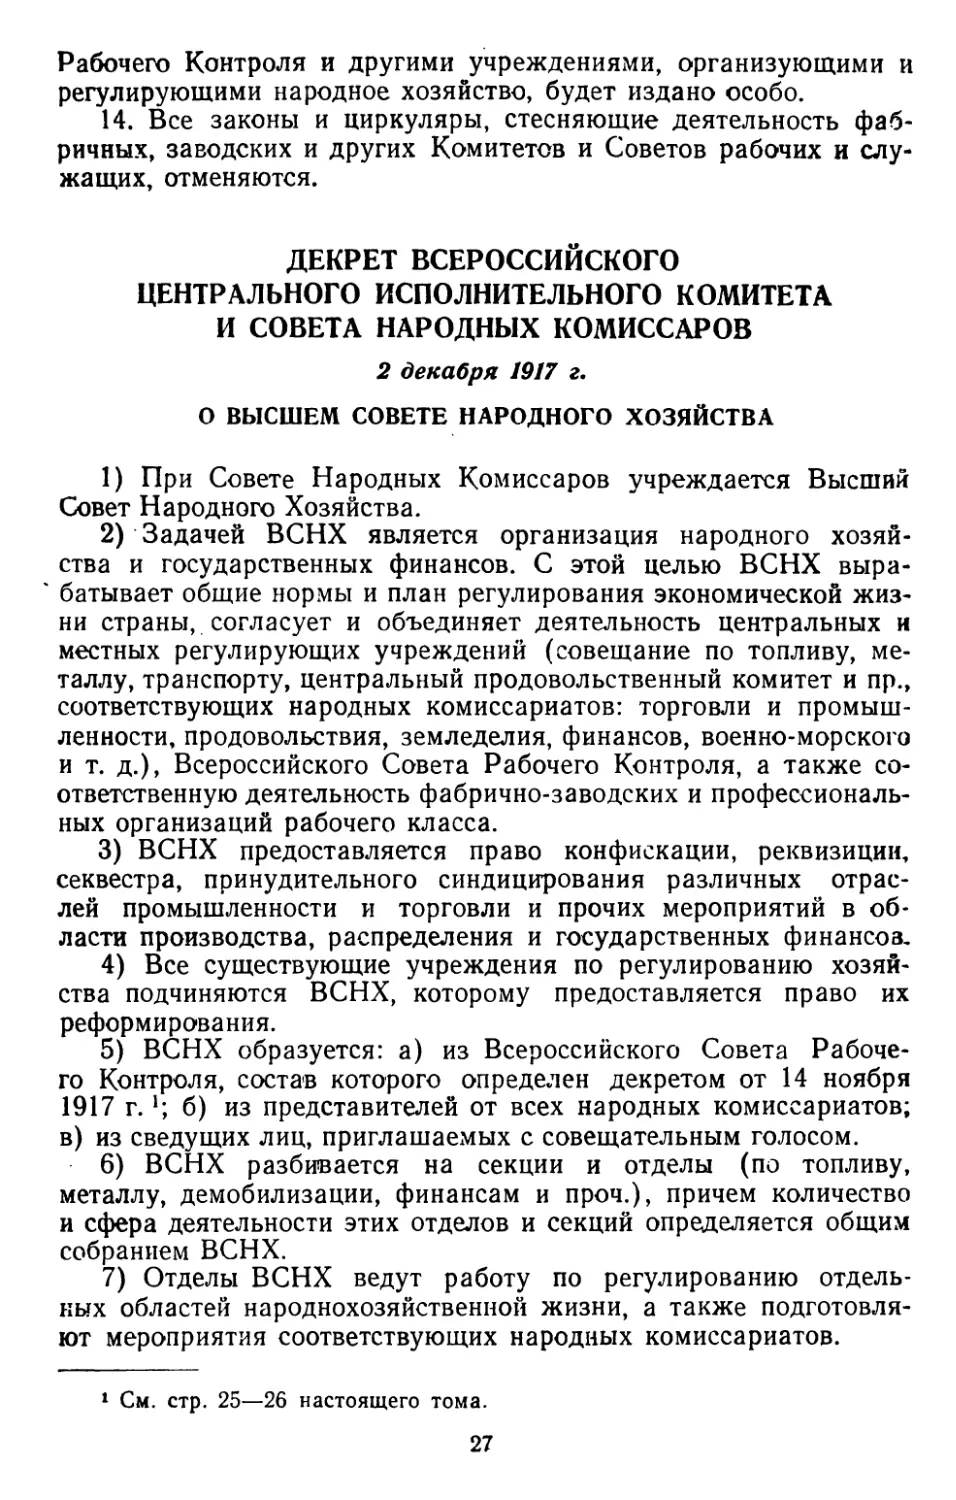 Декрет Всероссийского Центрального Исполнительного Комитета и Совета Народных Комиссаров, 2 декабря 1917 г. О Высшем Совете Народного Хозяйства